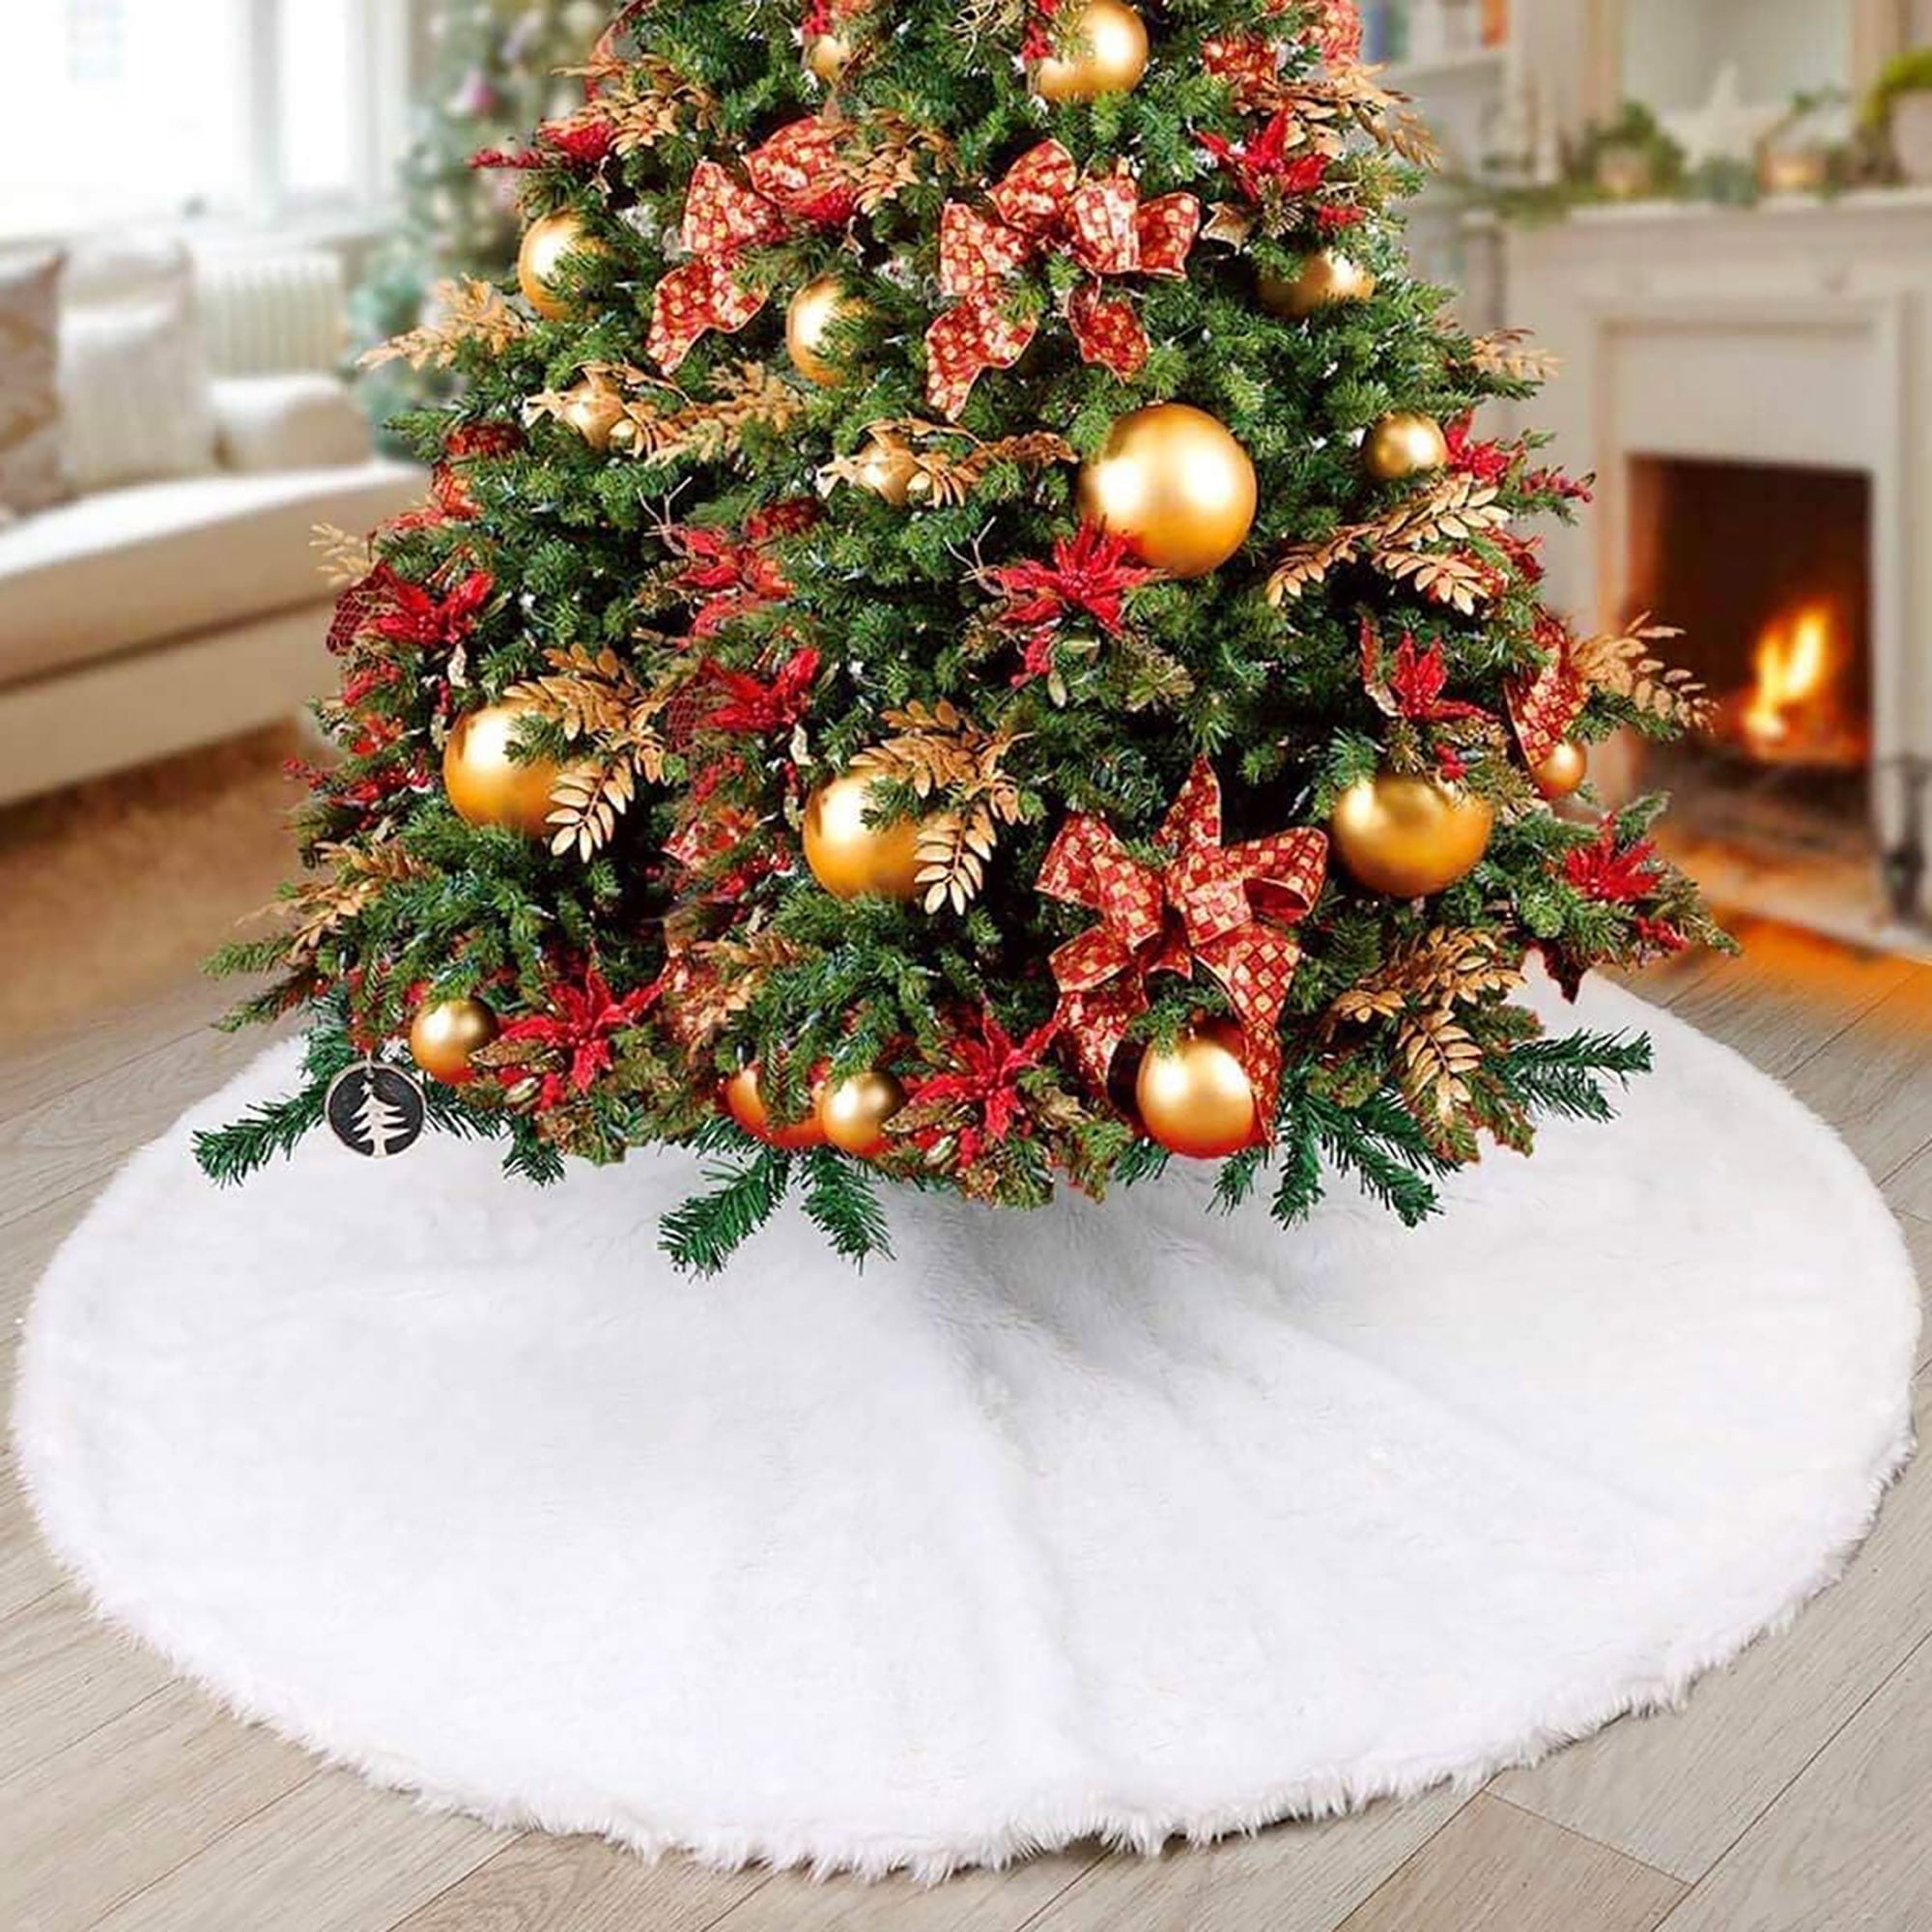 Kayannuo Christmas Decorations Christmas Clearance Christmas Tree Skirt  Knitting Tree Skirt Apron Surface Knitting Snowflake Christmas Tree Skirt